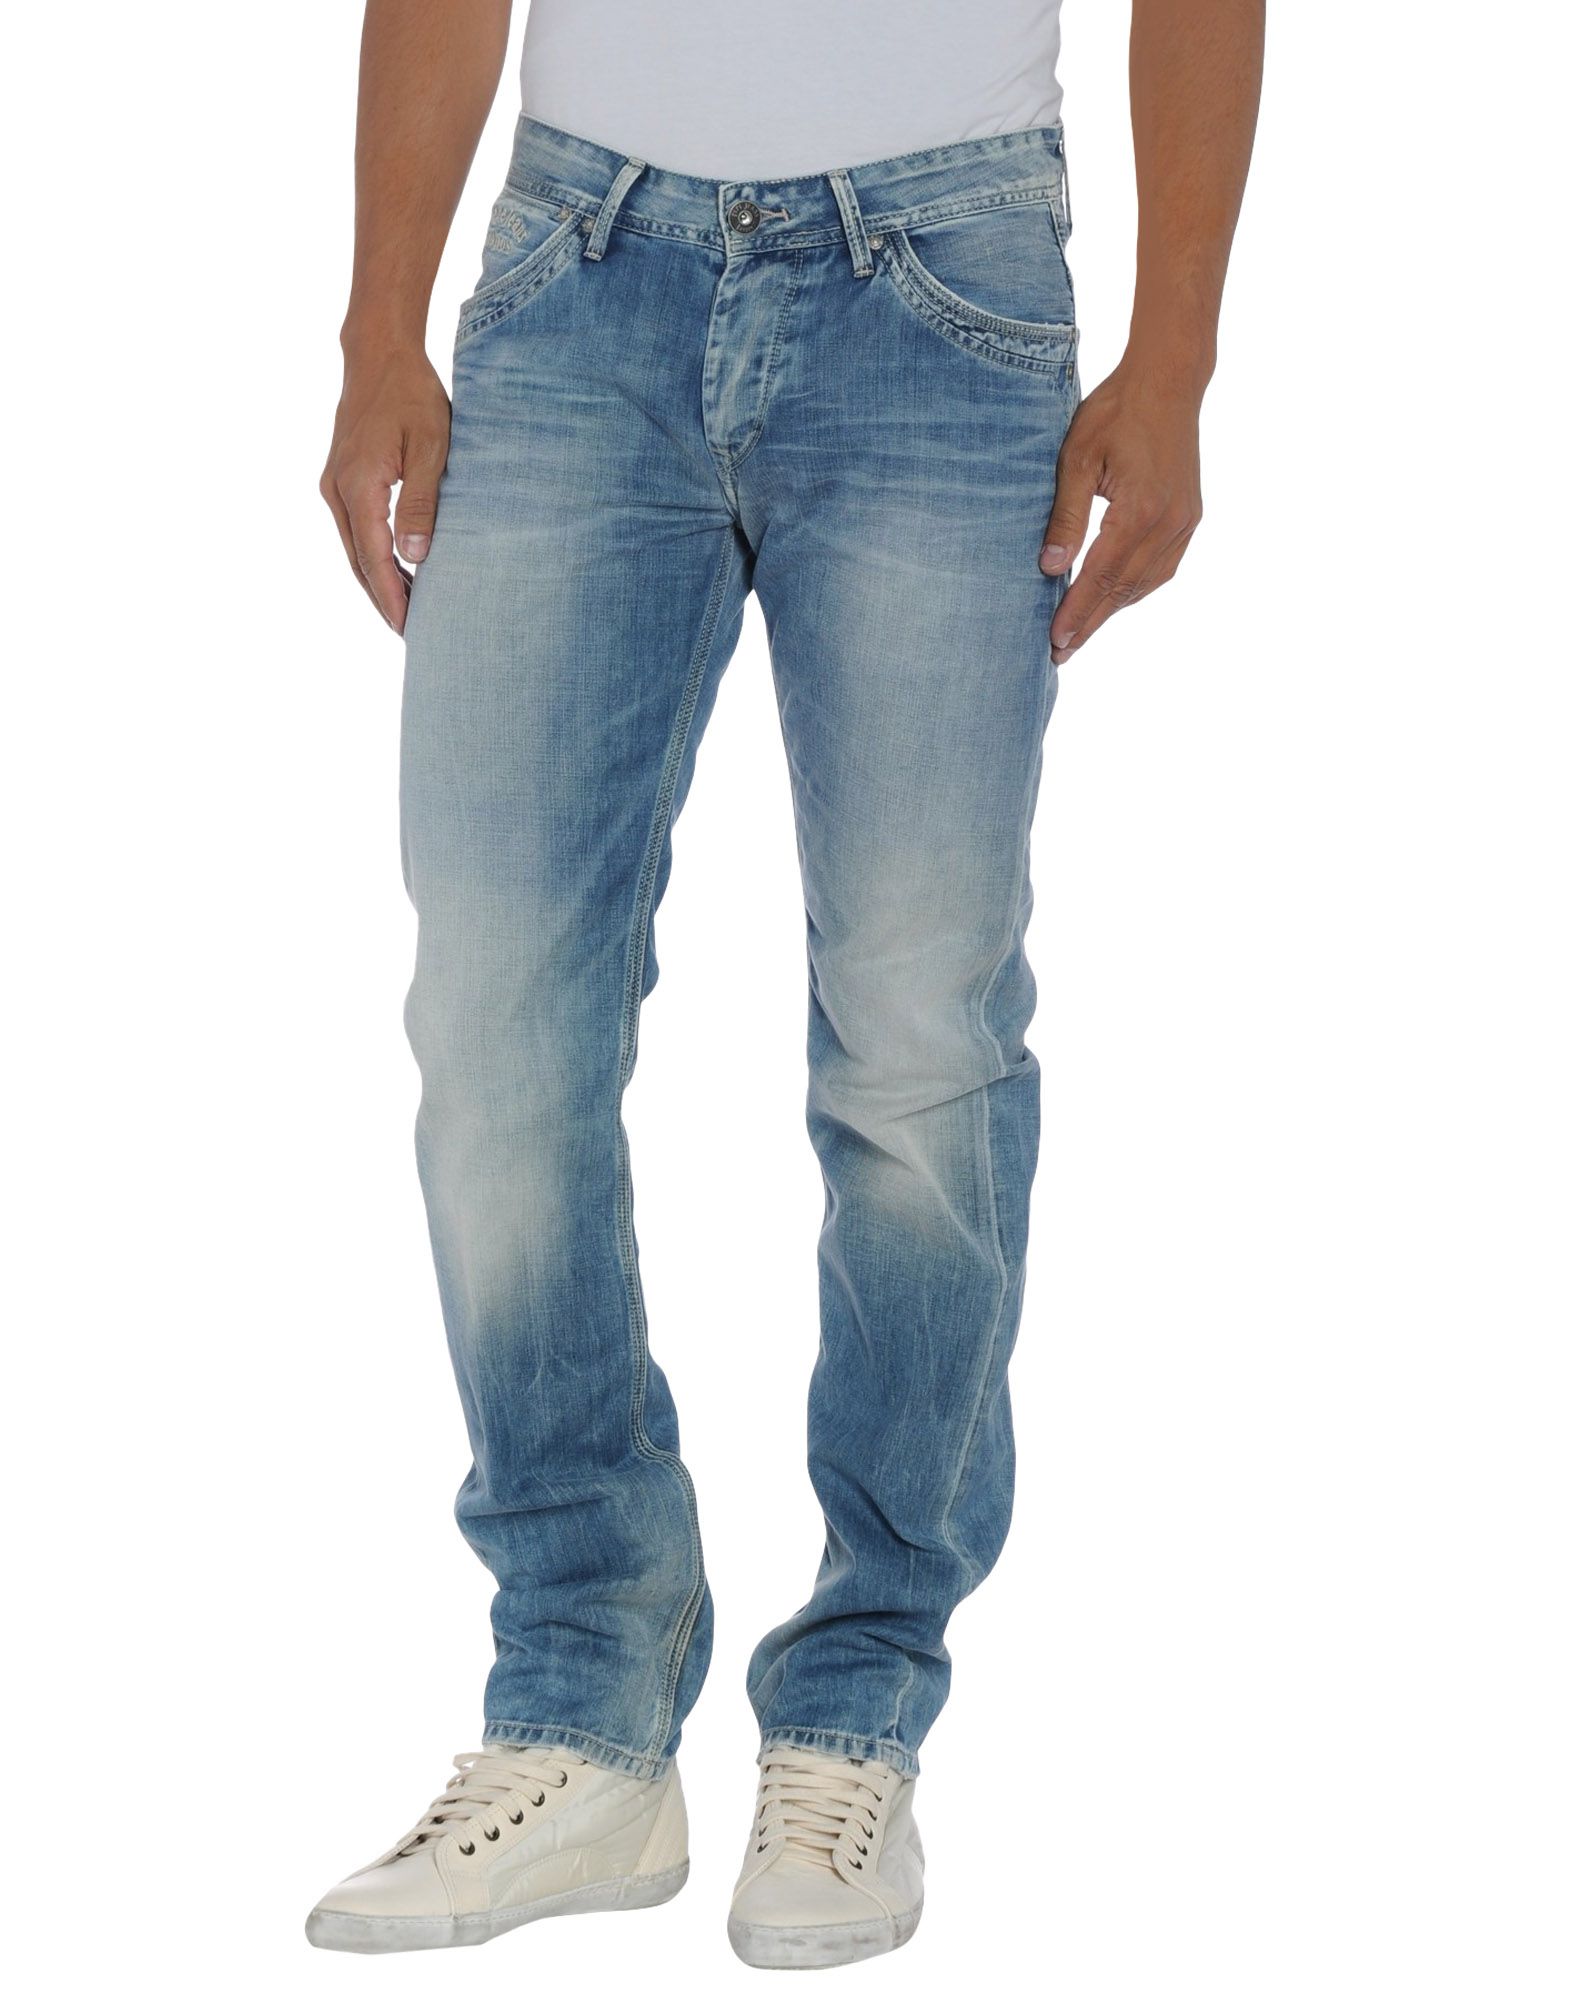 Foto pepe jeans pantalones vaqueros Hombre Azul marino foto 578272